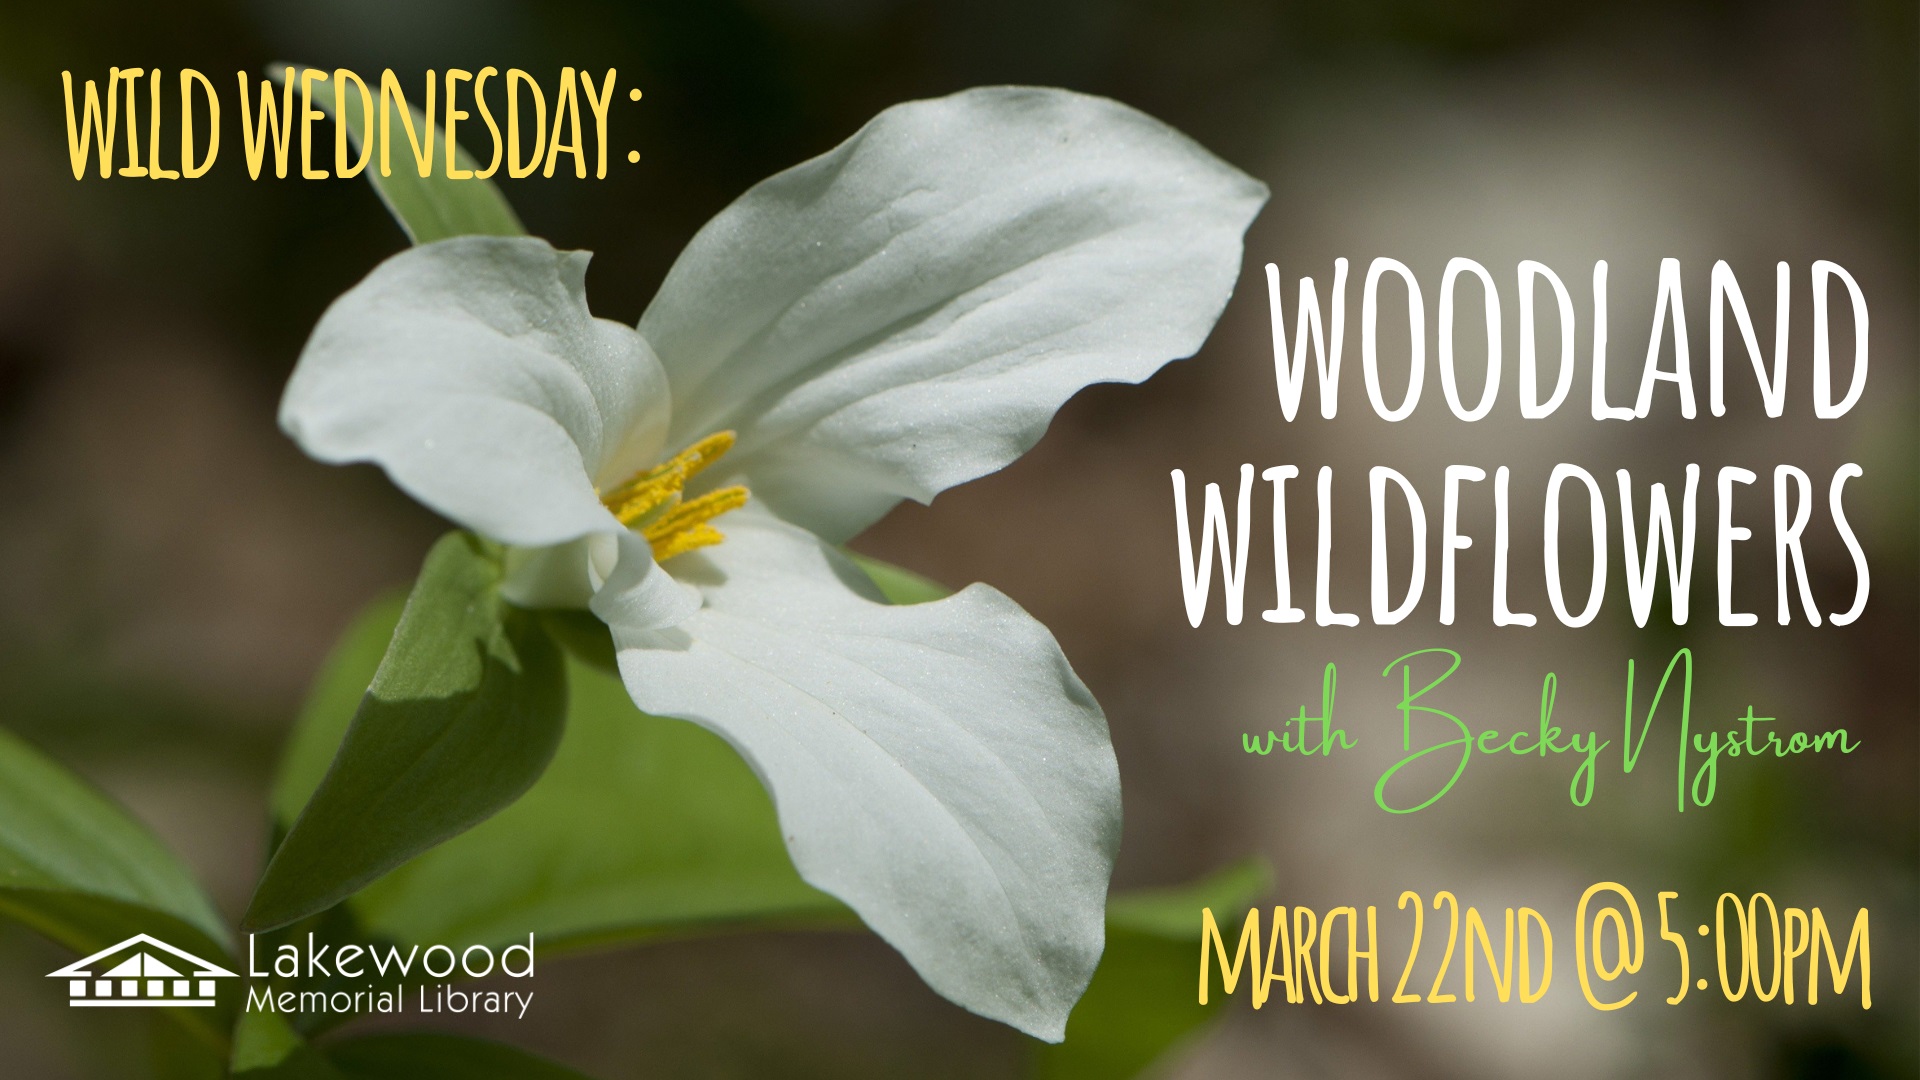 Wild Wednesday: Woodland Wildflowers